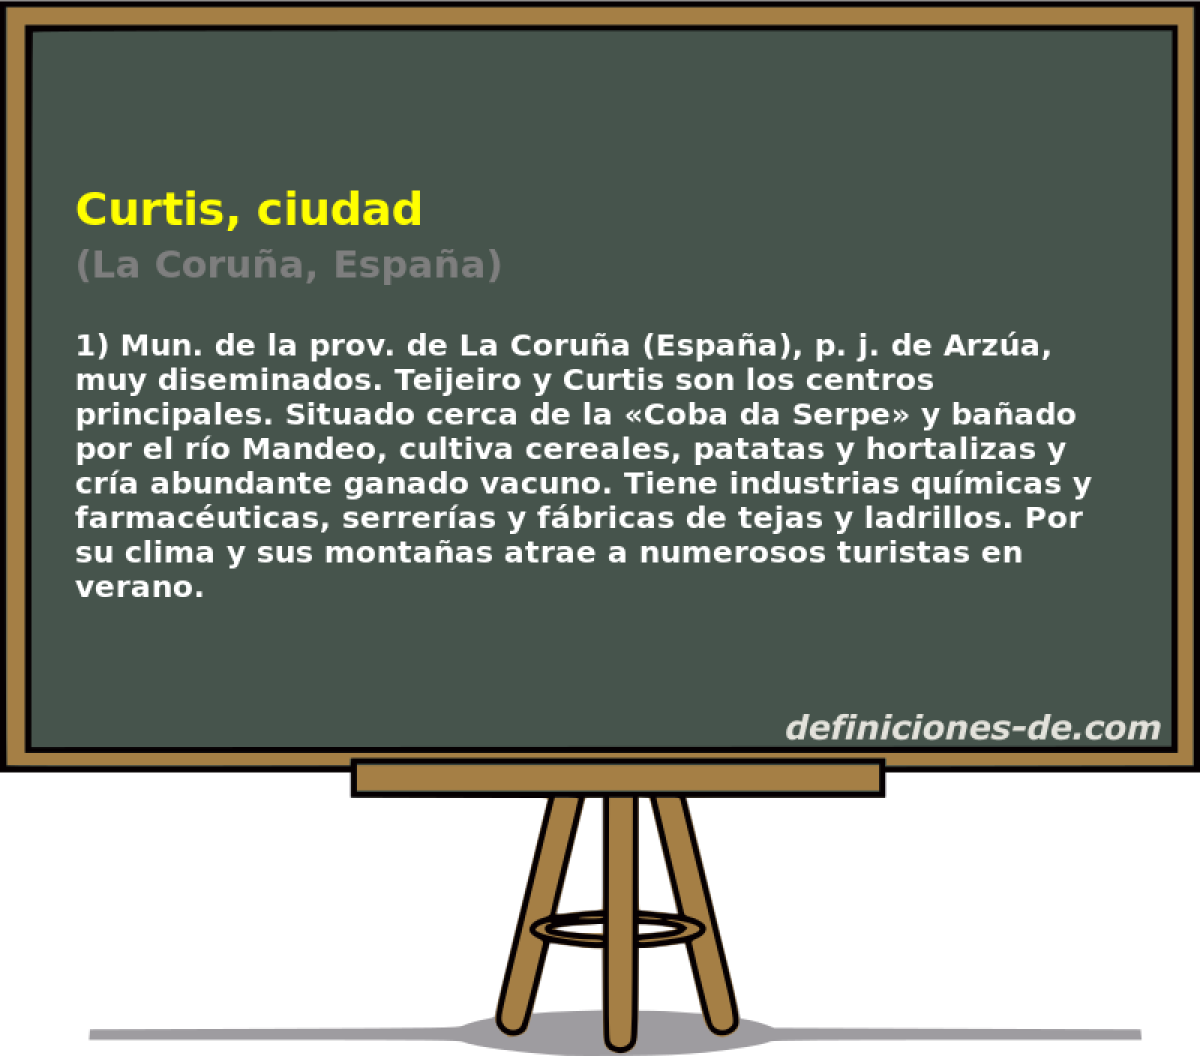 Curtis, ciudad (La Corua, Espaa)